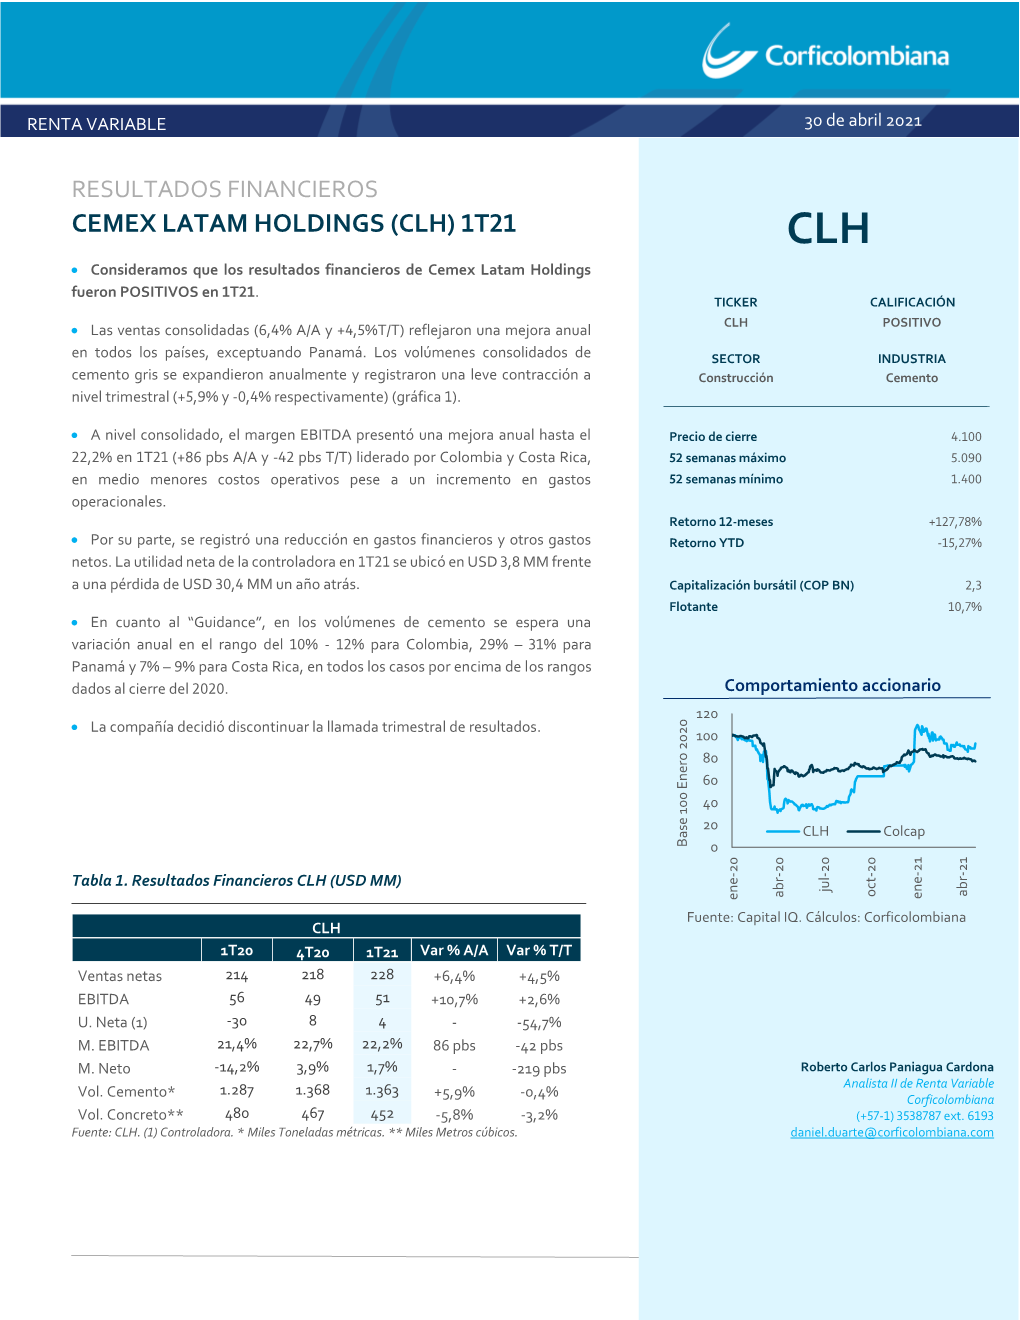 CEMEX LATAM HOLDINGS (CLH) 1T21 CLH • Consideramos Que Los Resultados Financieros De Cemex Latam Holdings